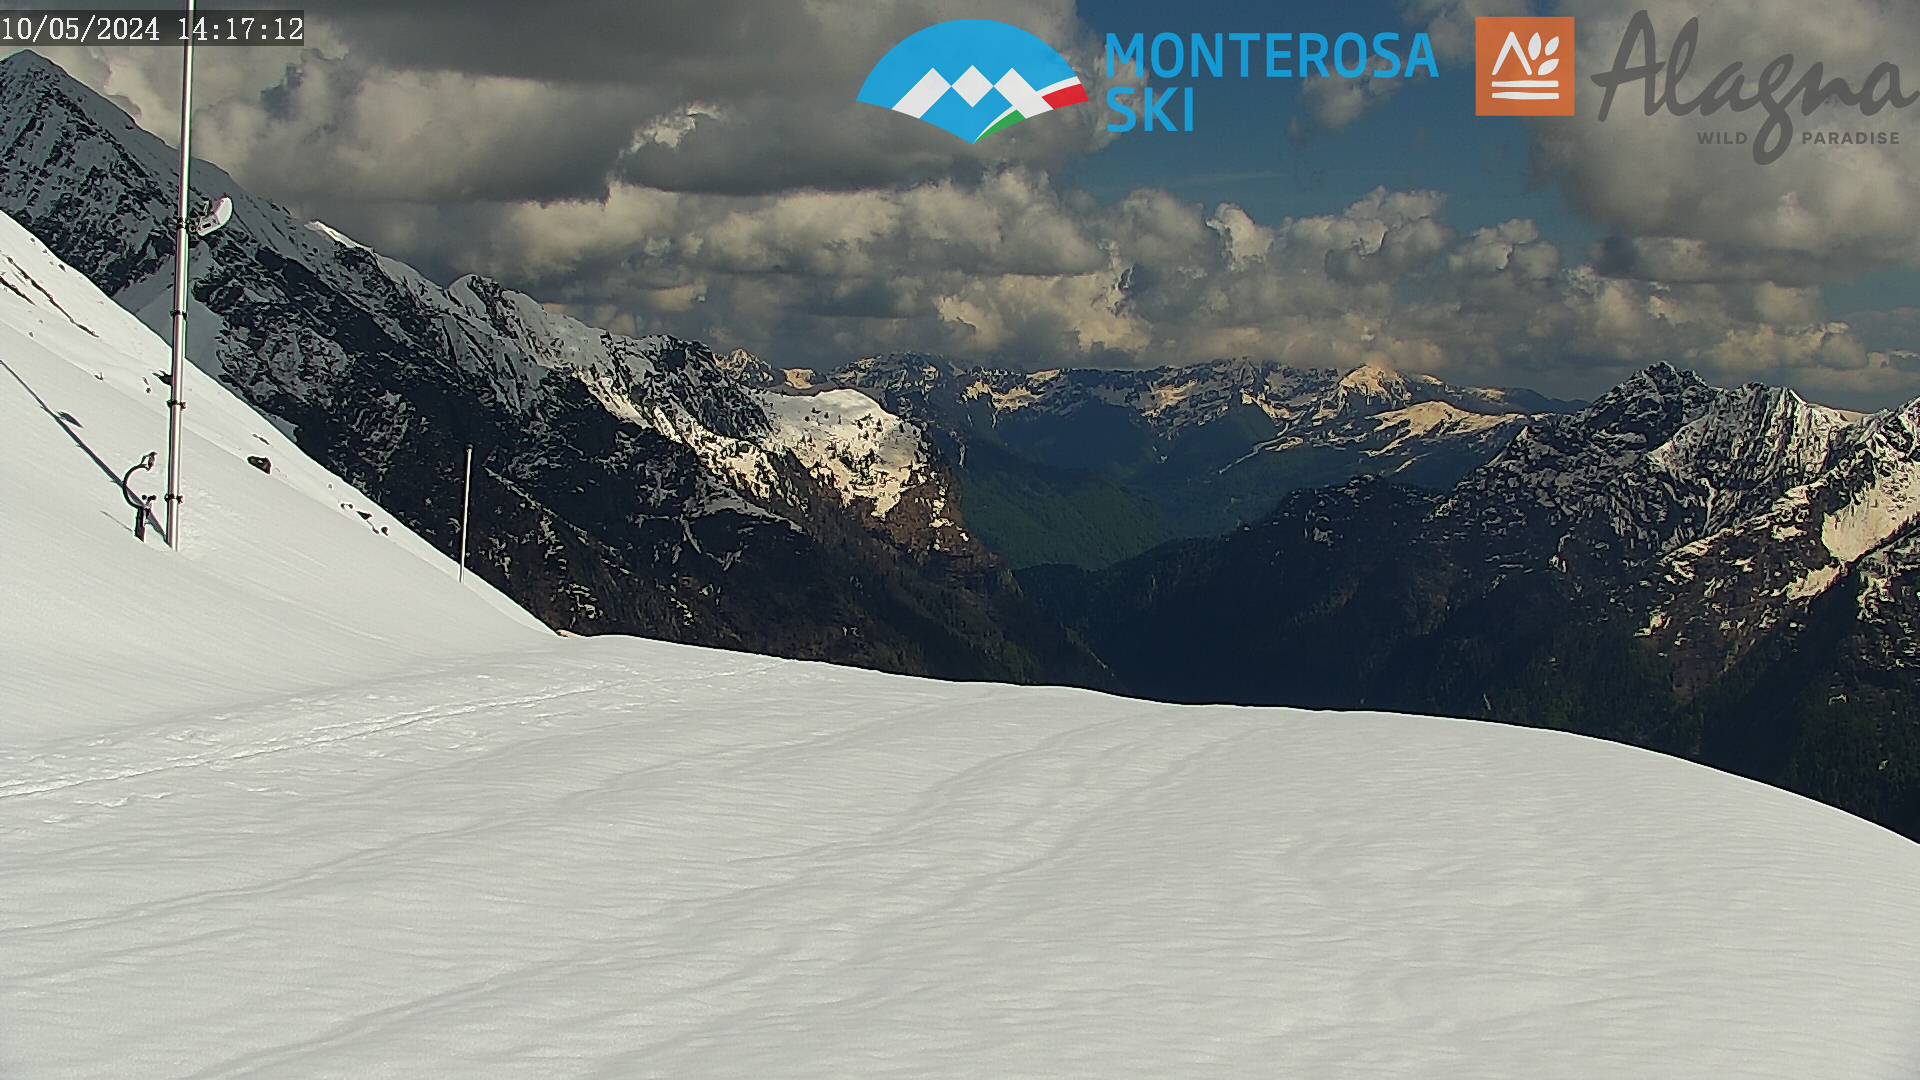 Monterosa-ski Alagna Valsesia - Panorama da Bocchetta delle Pisse